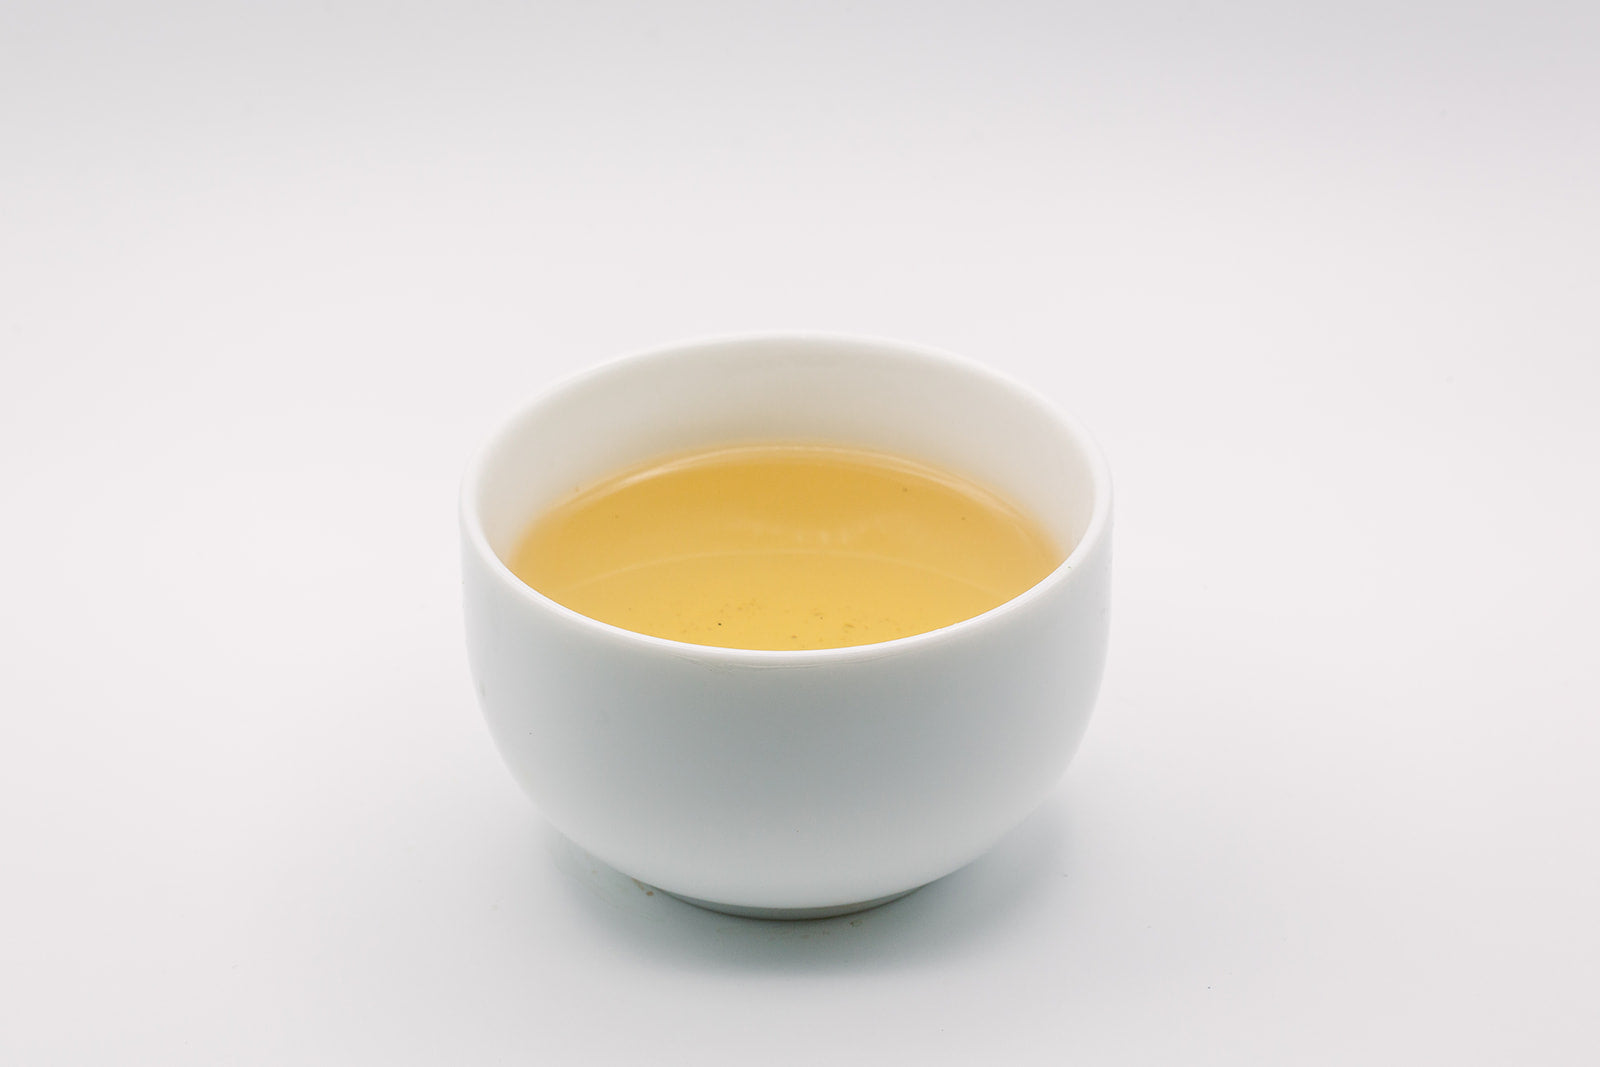 Mao Jian Green Tea